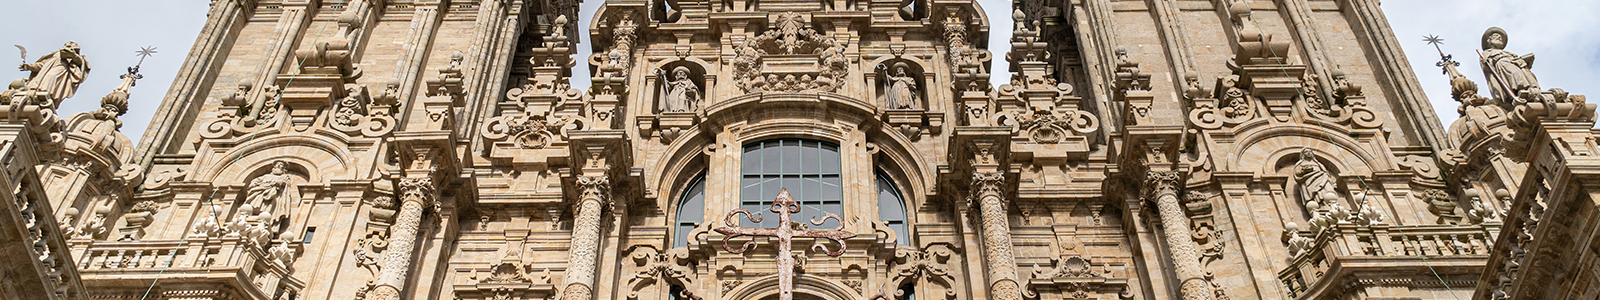 El arte en España: de la Mezquita de Córdoba y la Catedral de Santiago a Gaudí, Picasso y Dalí